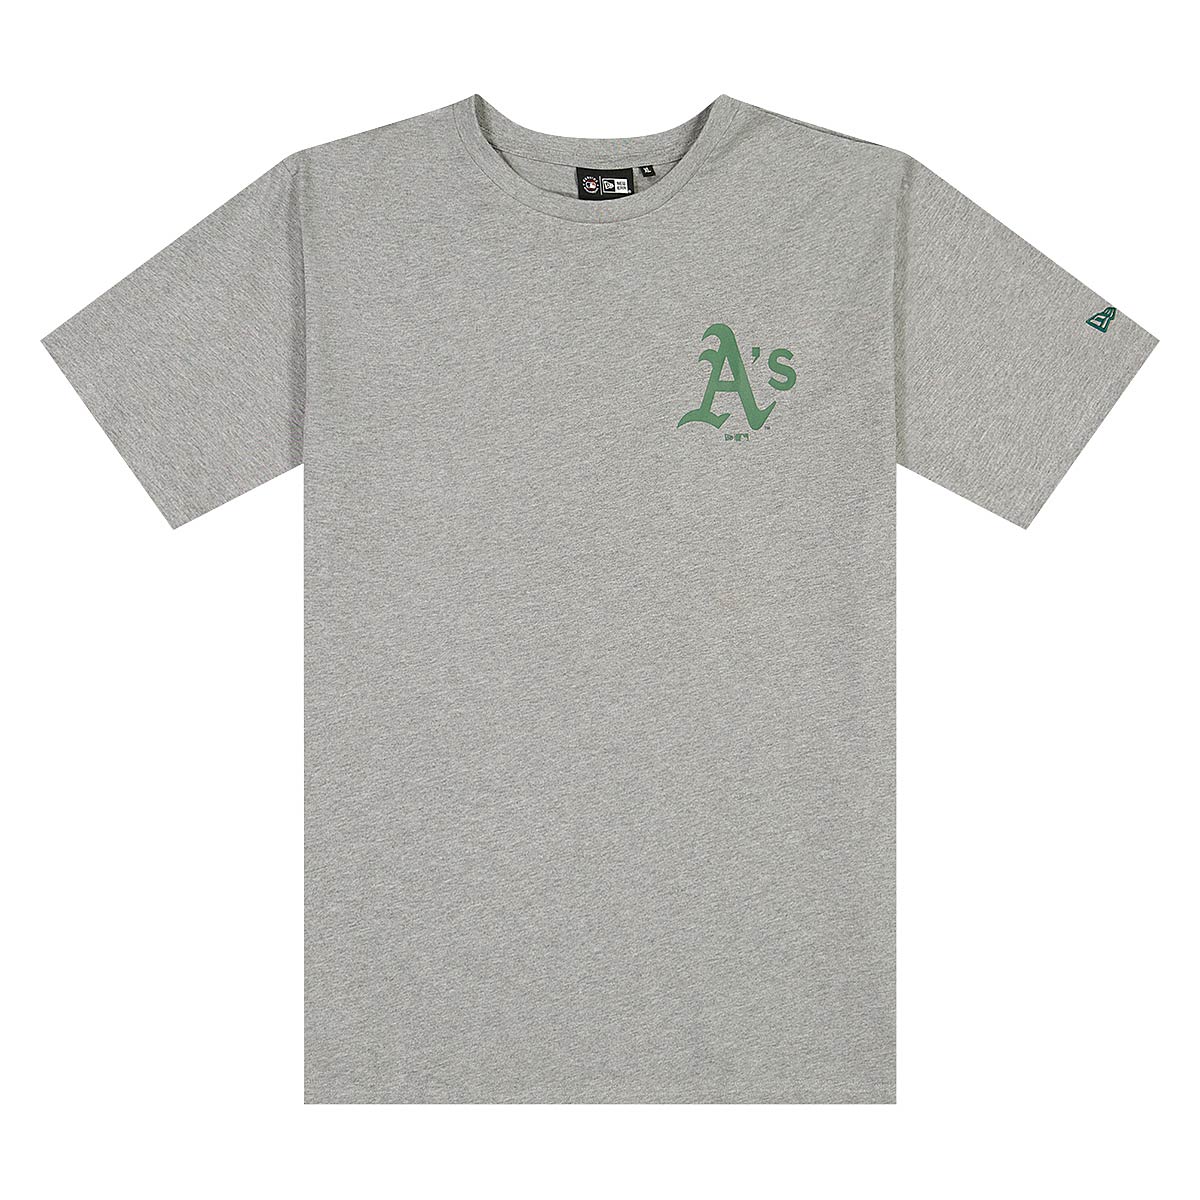 New Era - Oakland Athletics MLB Ice Cream Oversized T-Shirt - Grey